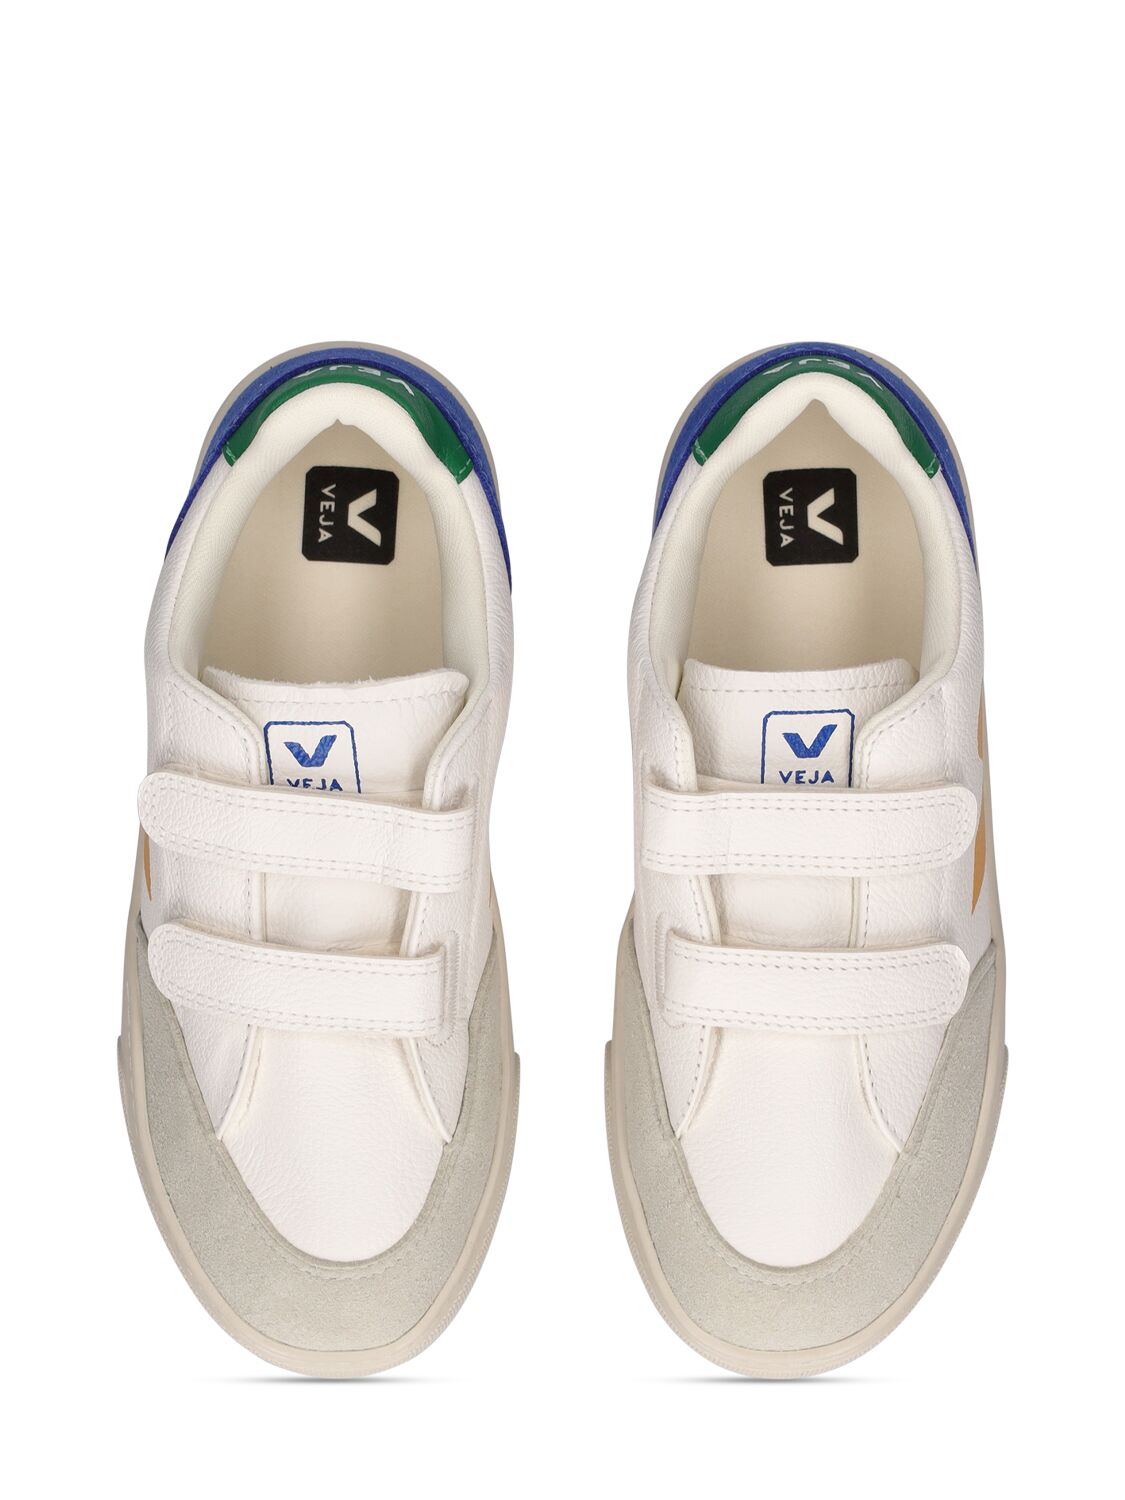 Shop Veja V-12 Chrome-free Leather Sneakers In White,multi